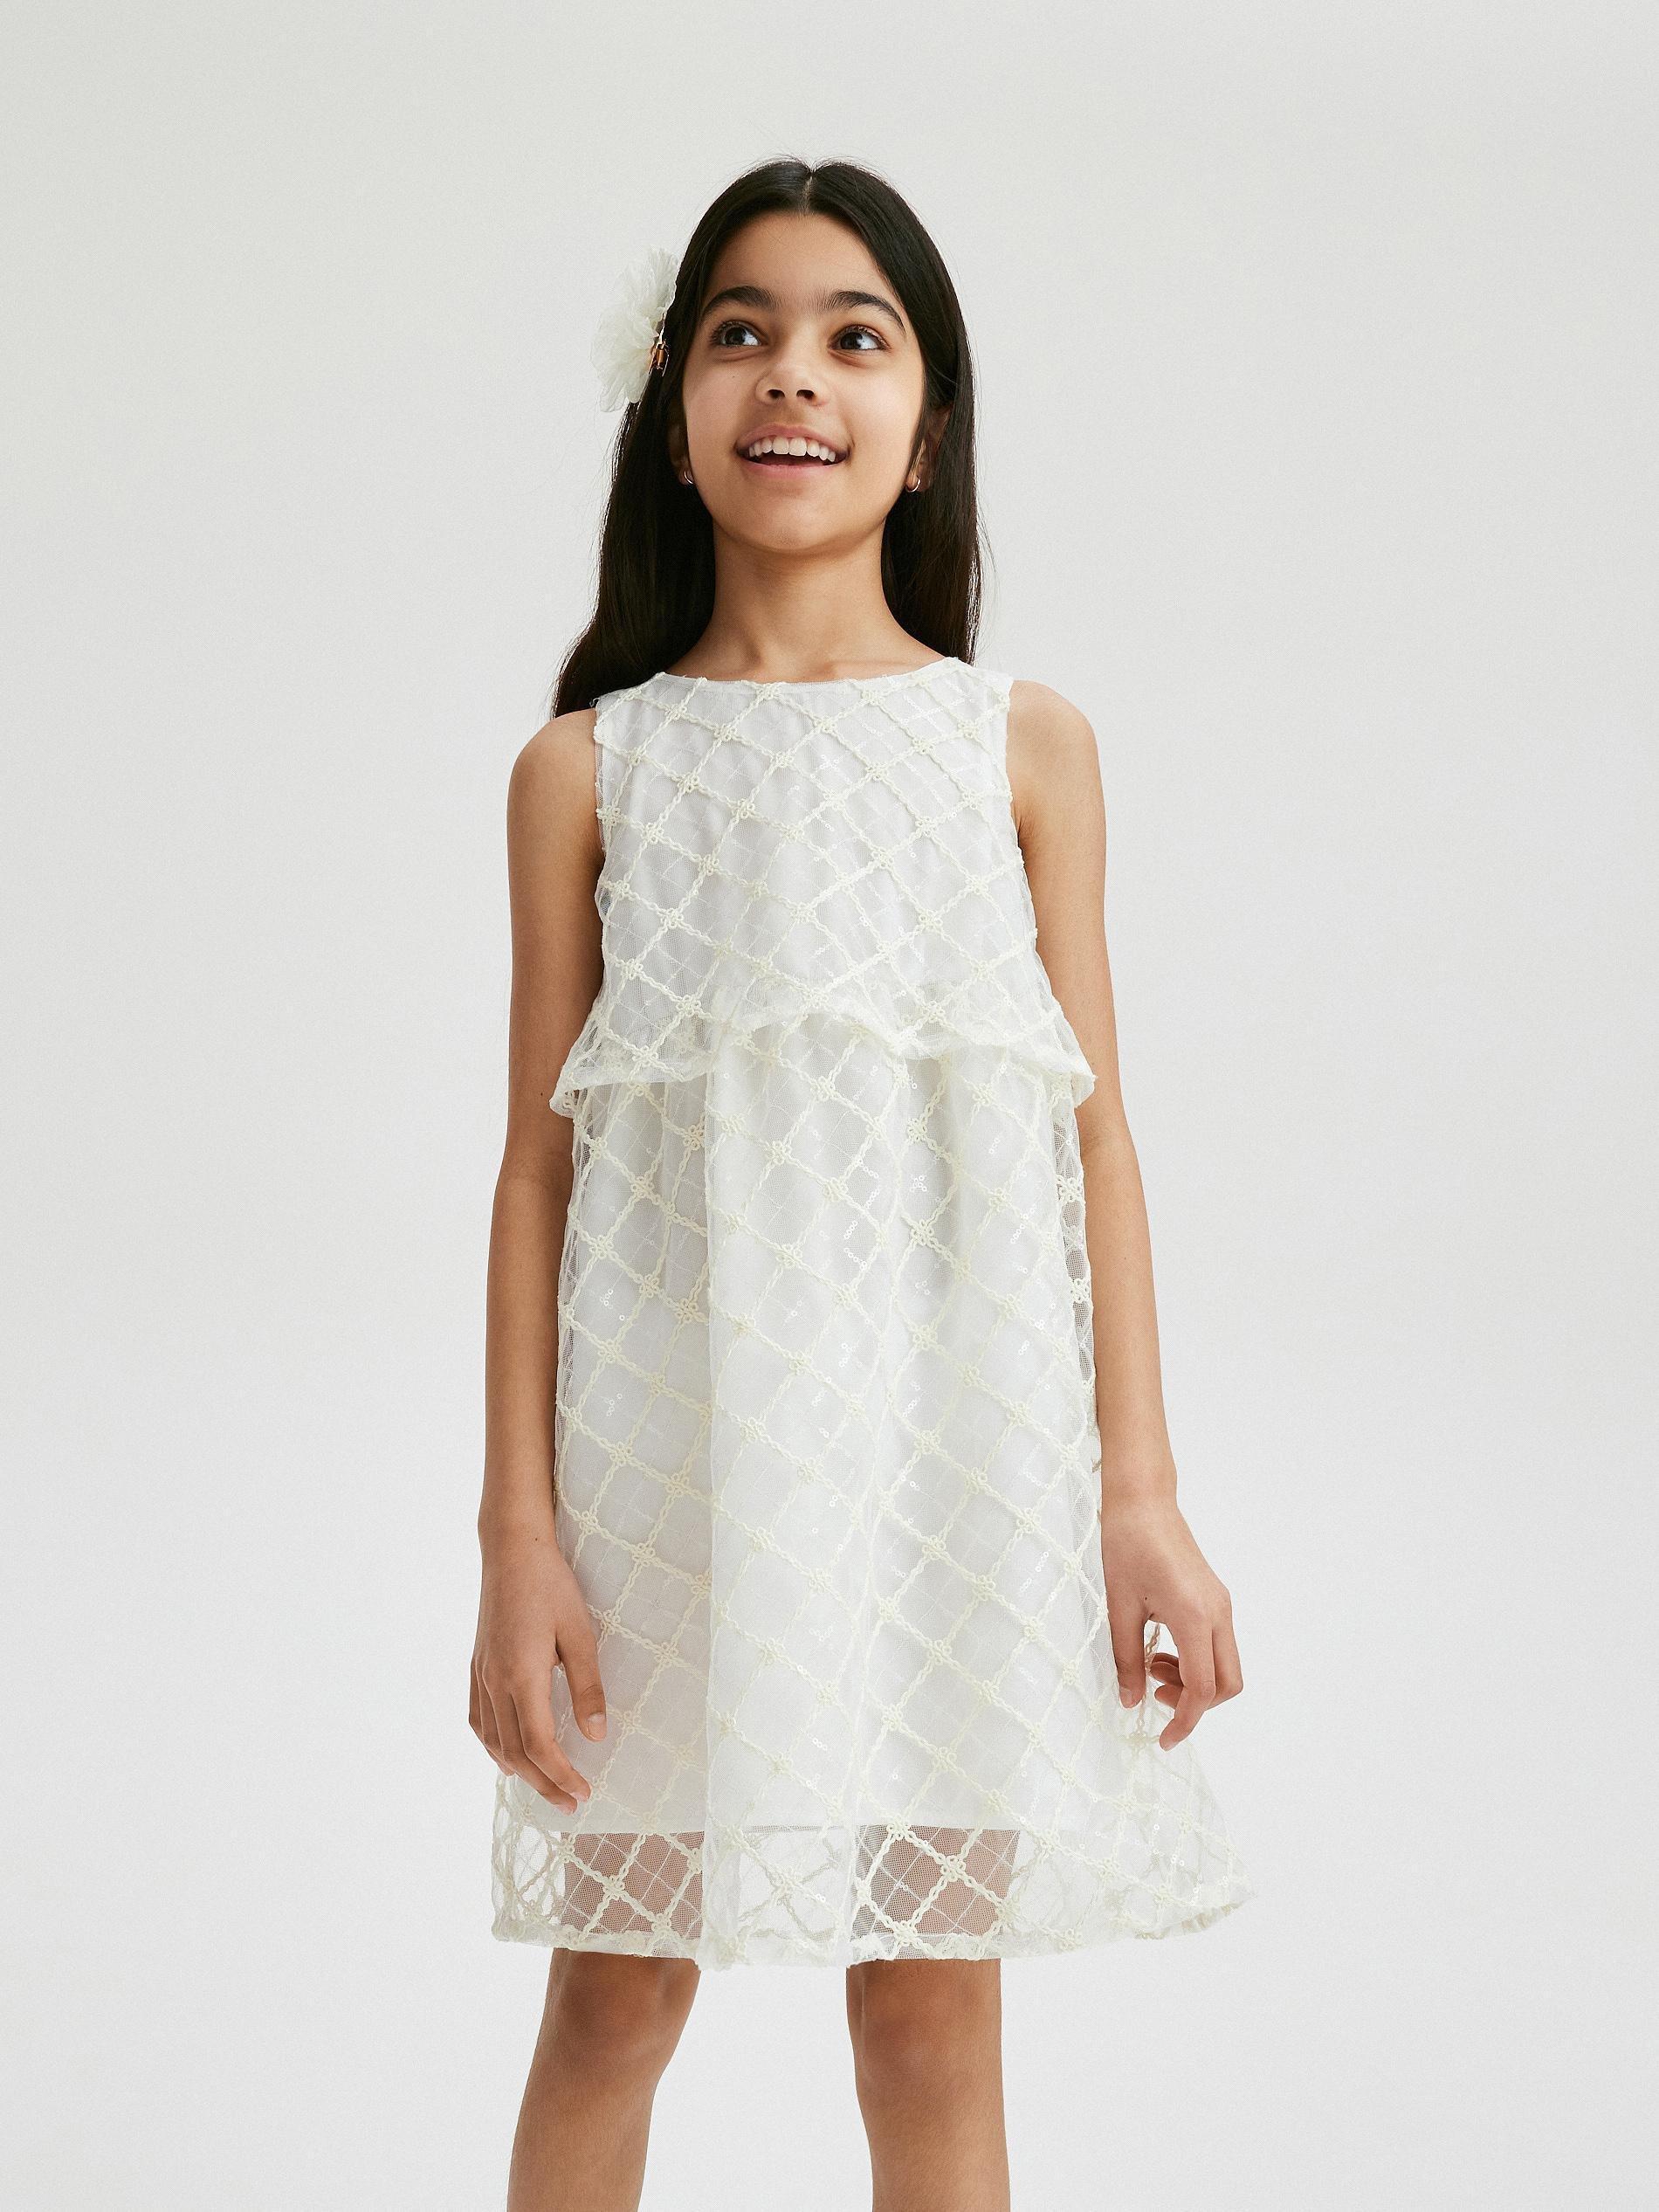 Reserved - White Sleeveless Dress, Kids Girls